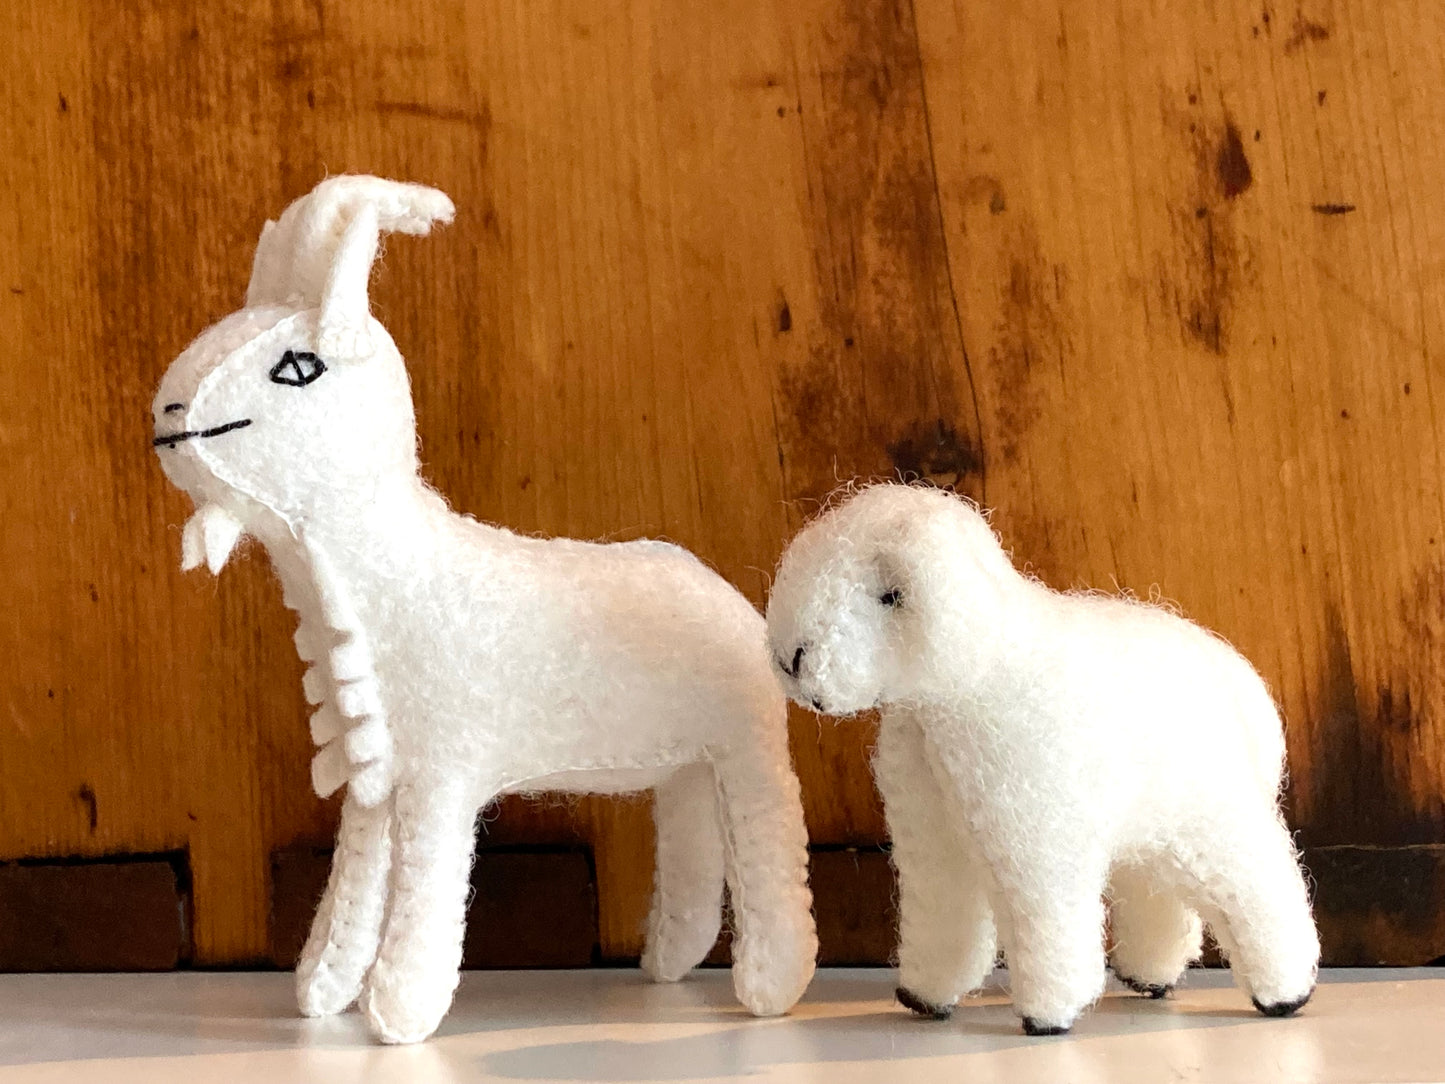 Dollhouse Soft Toy  - FELT SHEEP